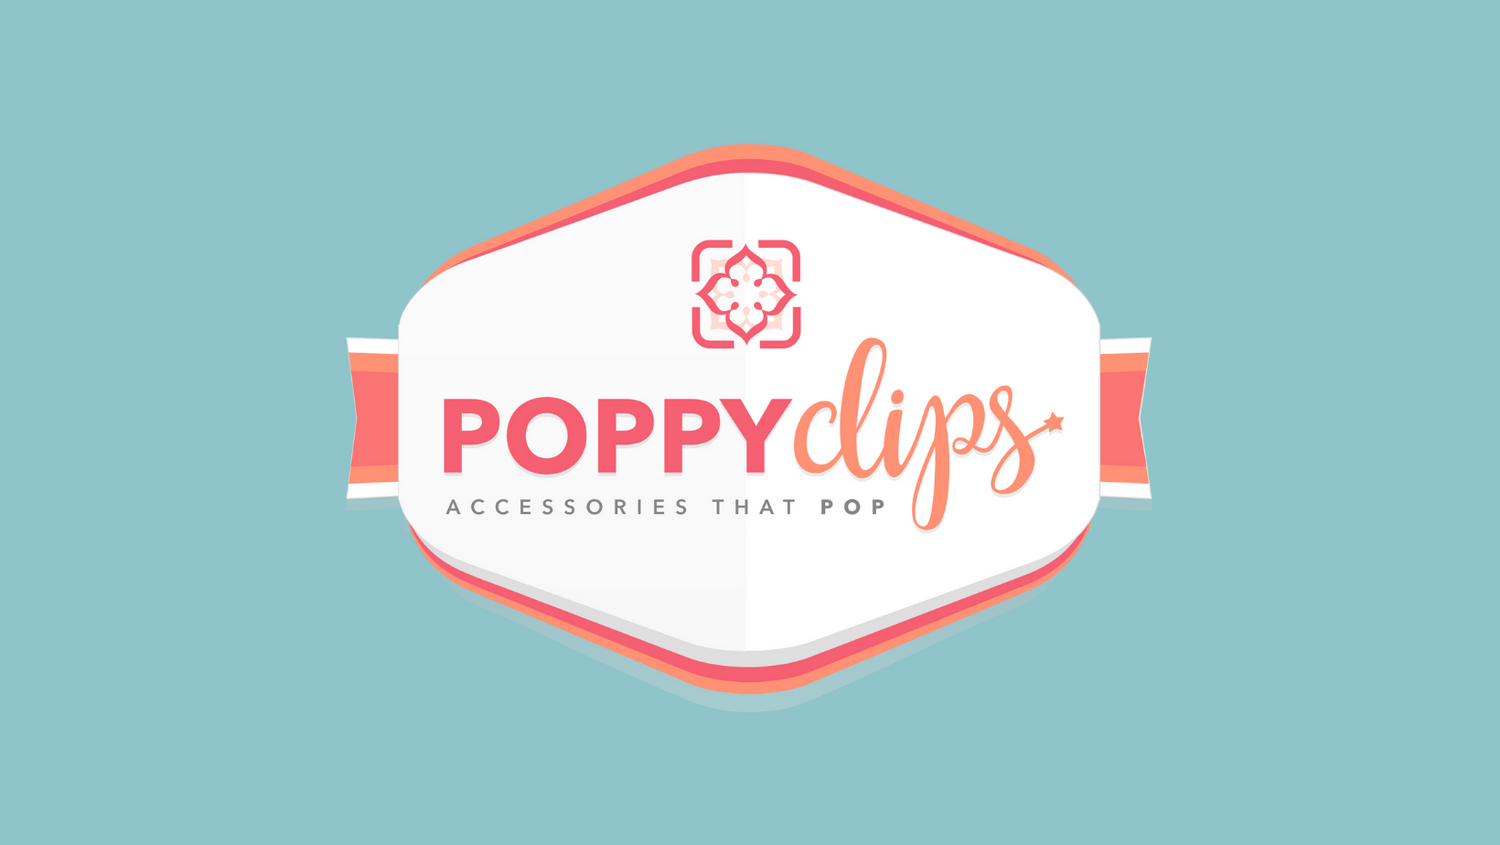 PoppyClips Accessories